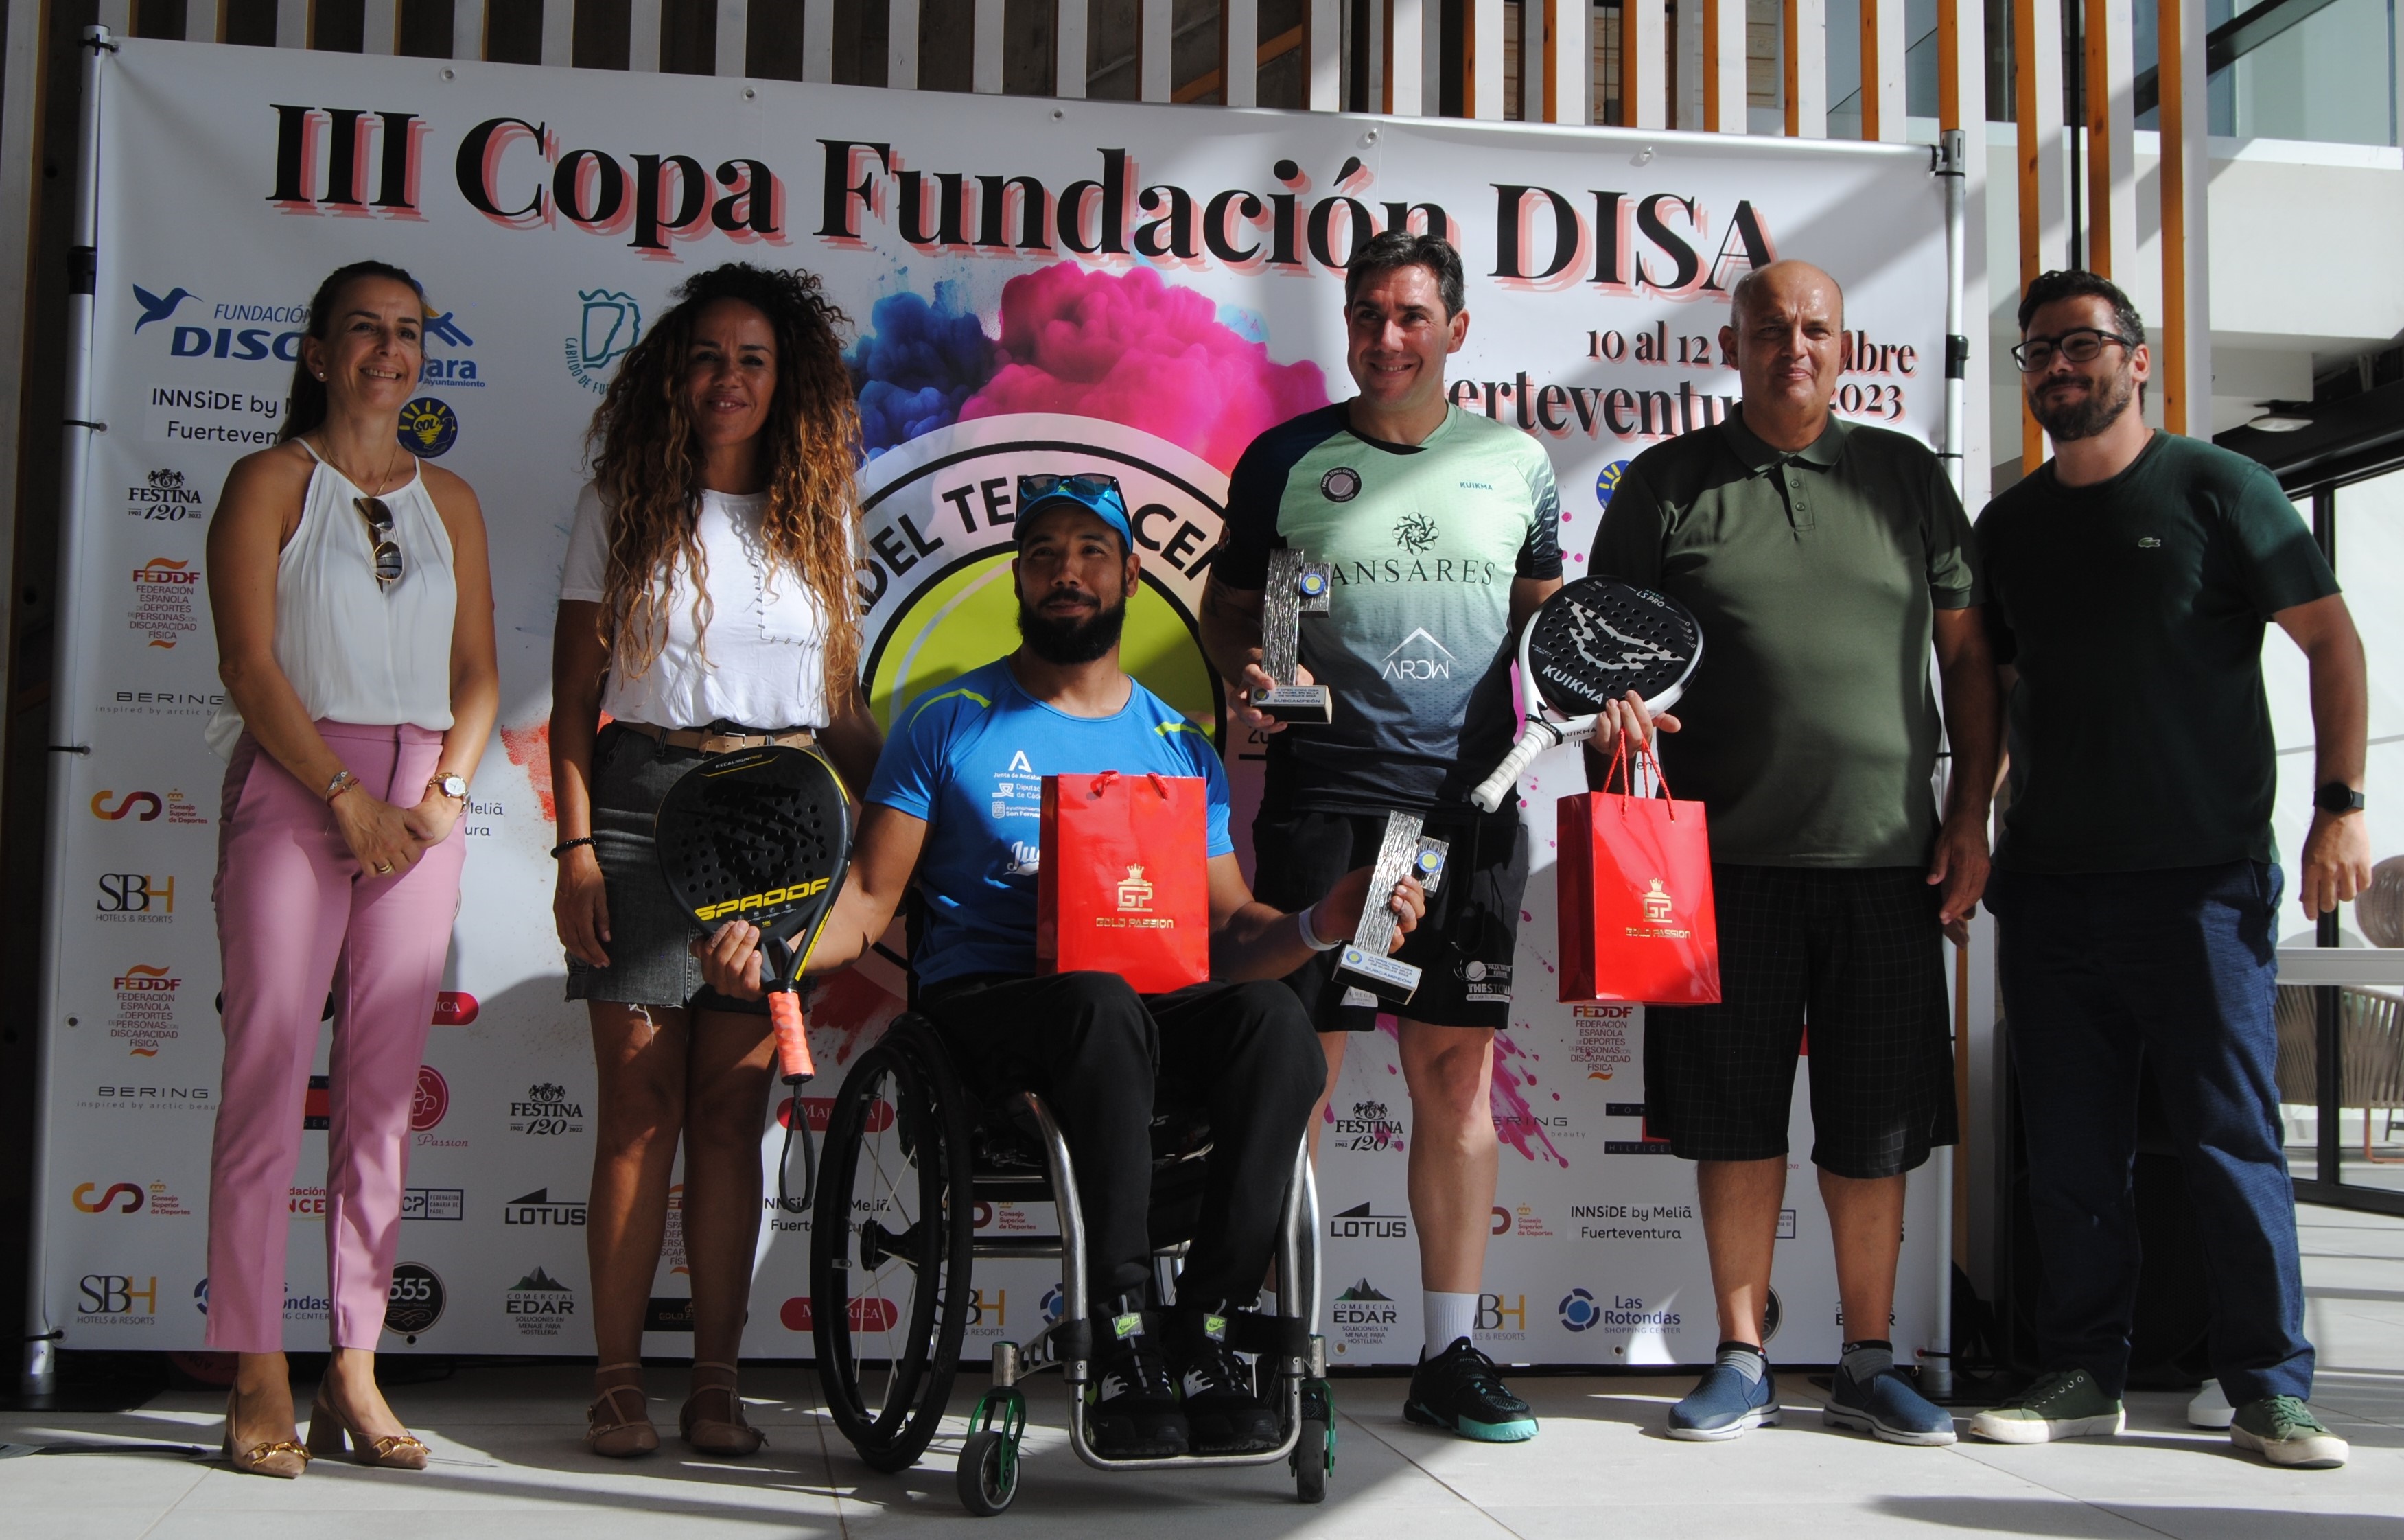 Subcampeones III Copa Nacional de Pádel en Silla de ruedas Fuerteventura